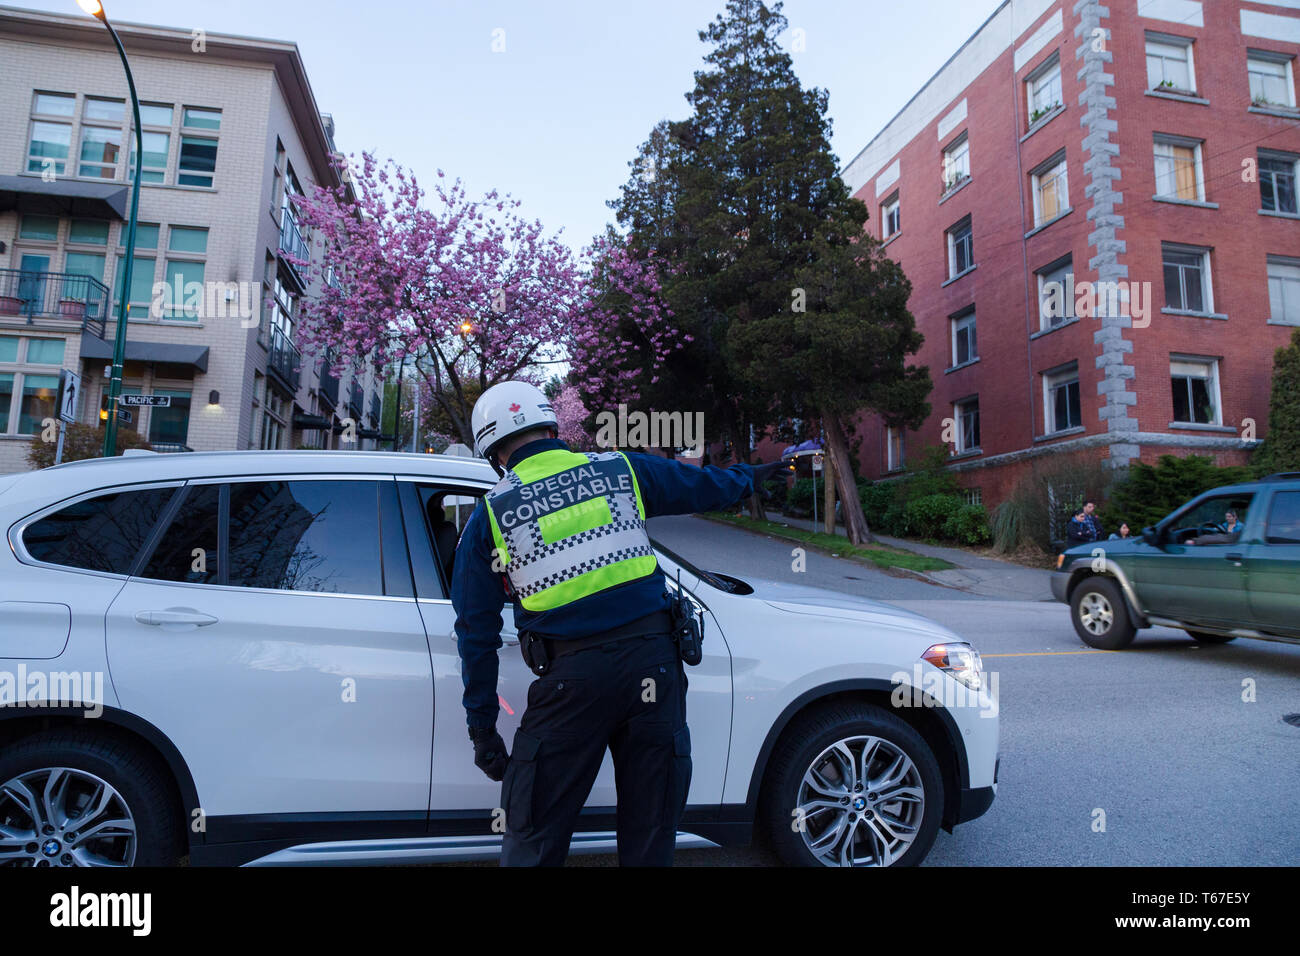 VANCOUVER, BC, CANADA - 20 avr 2019 : un agent de l'autorité de trafic de Vancouver fournit une assistance à un automobiliste. Banque D'Images